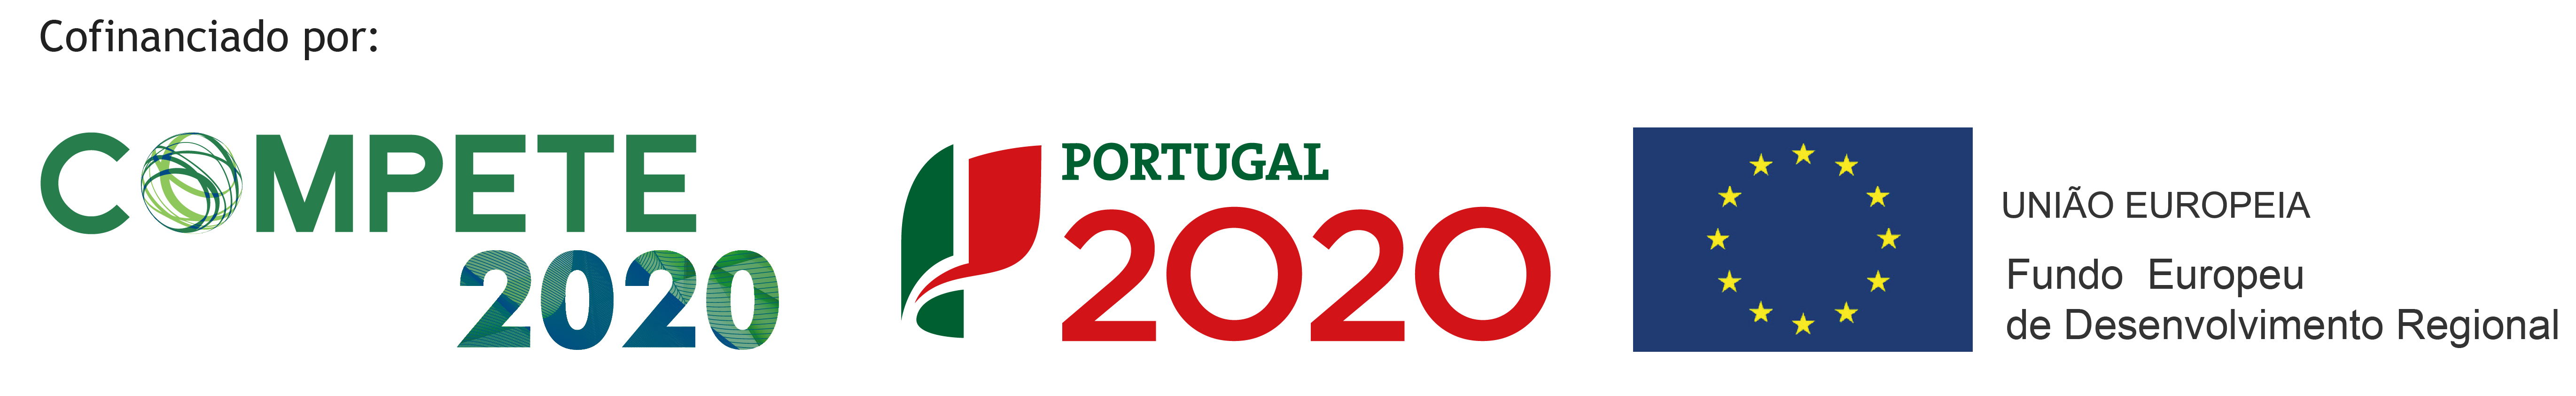 Compete 2020 | Portugal 2020 | União Europeia - Fundo Europeu de Desenvolvimento Regional